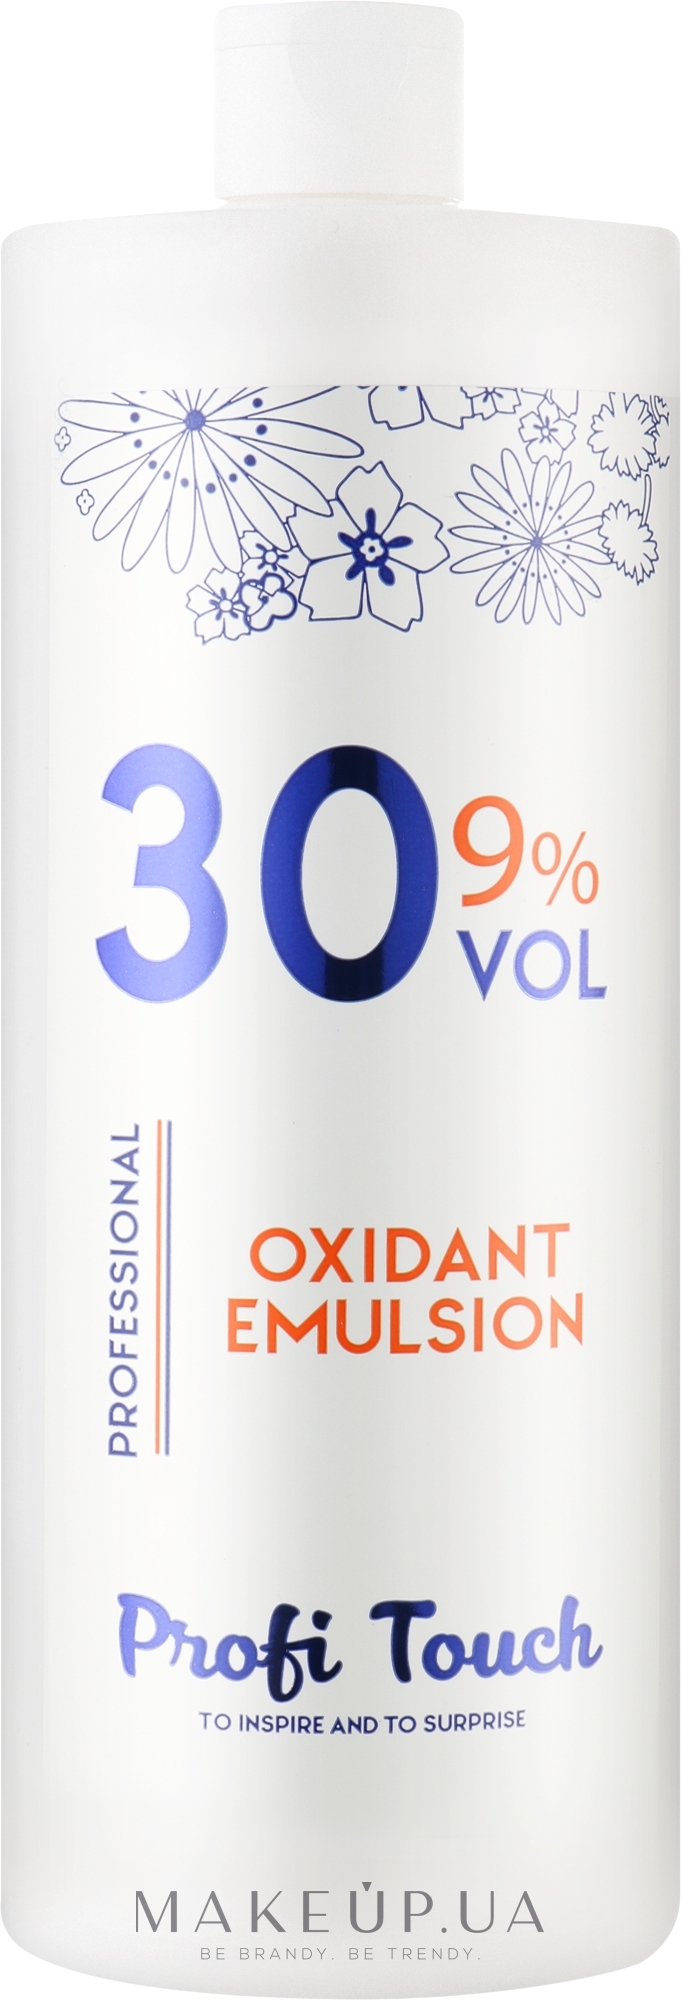 Гель-окислитель 30 vol 9% - Profi Touch Oxidant Emulsion — фото 1000g